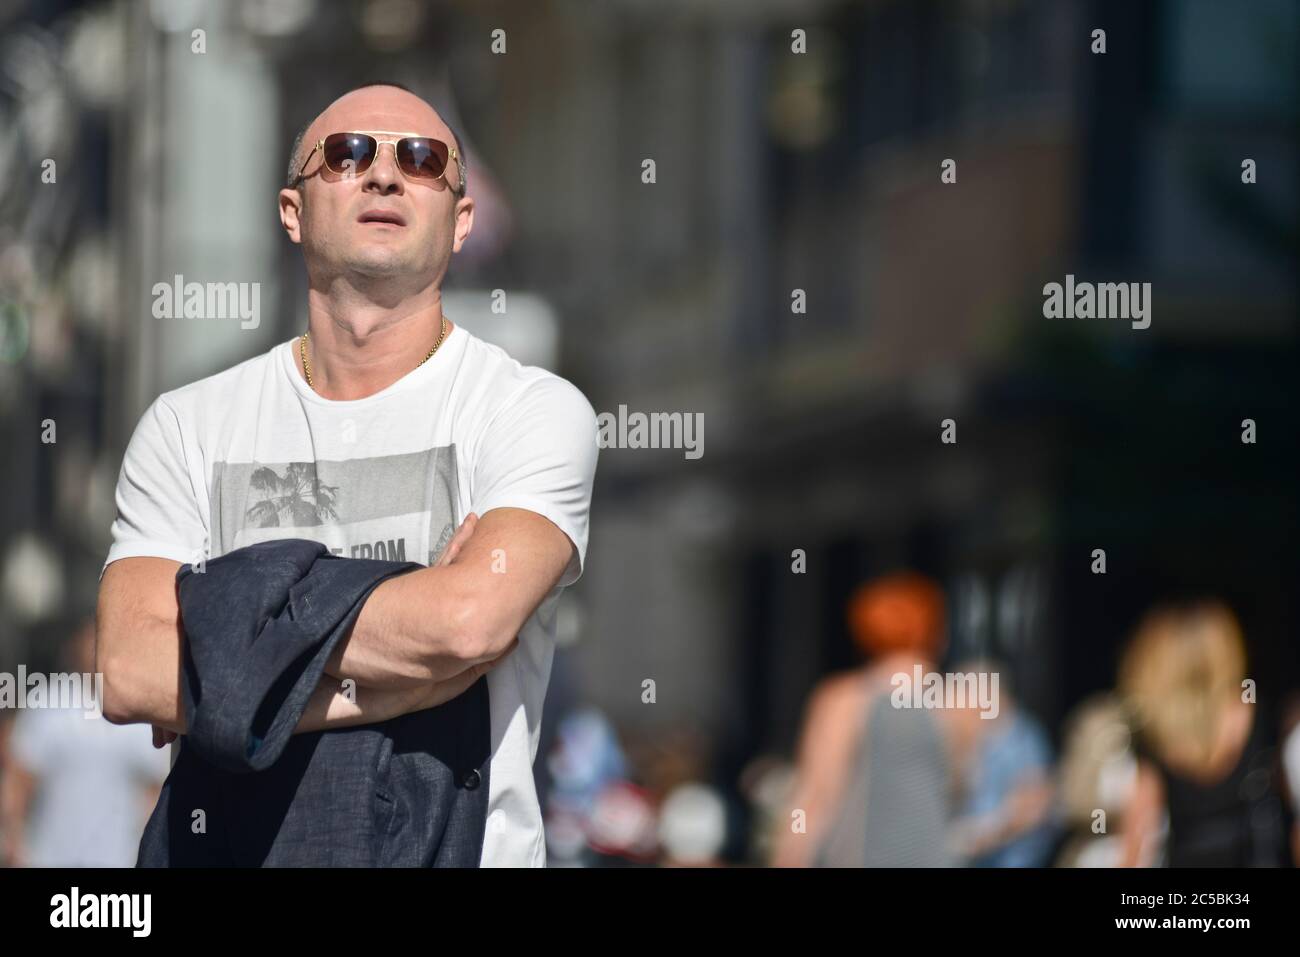 Italian man in Via Sparano. Bari, Italy Stock Photo